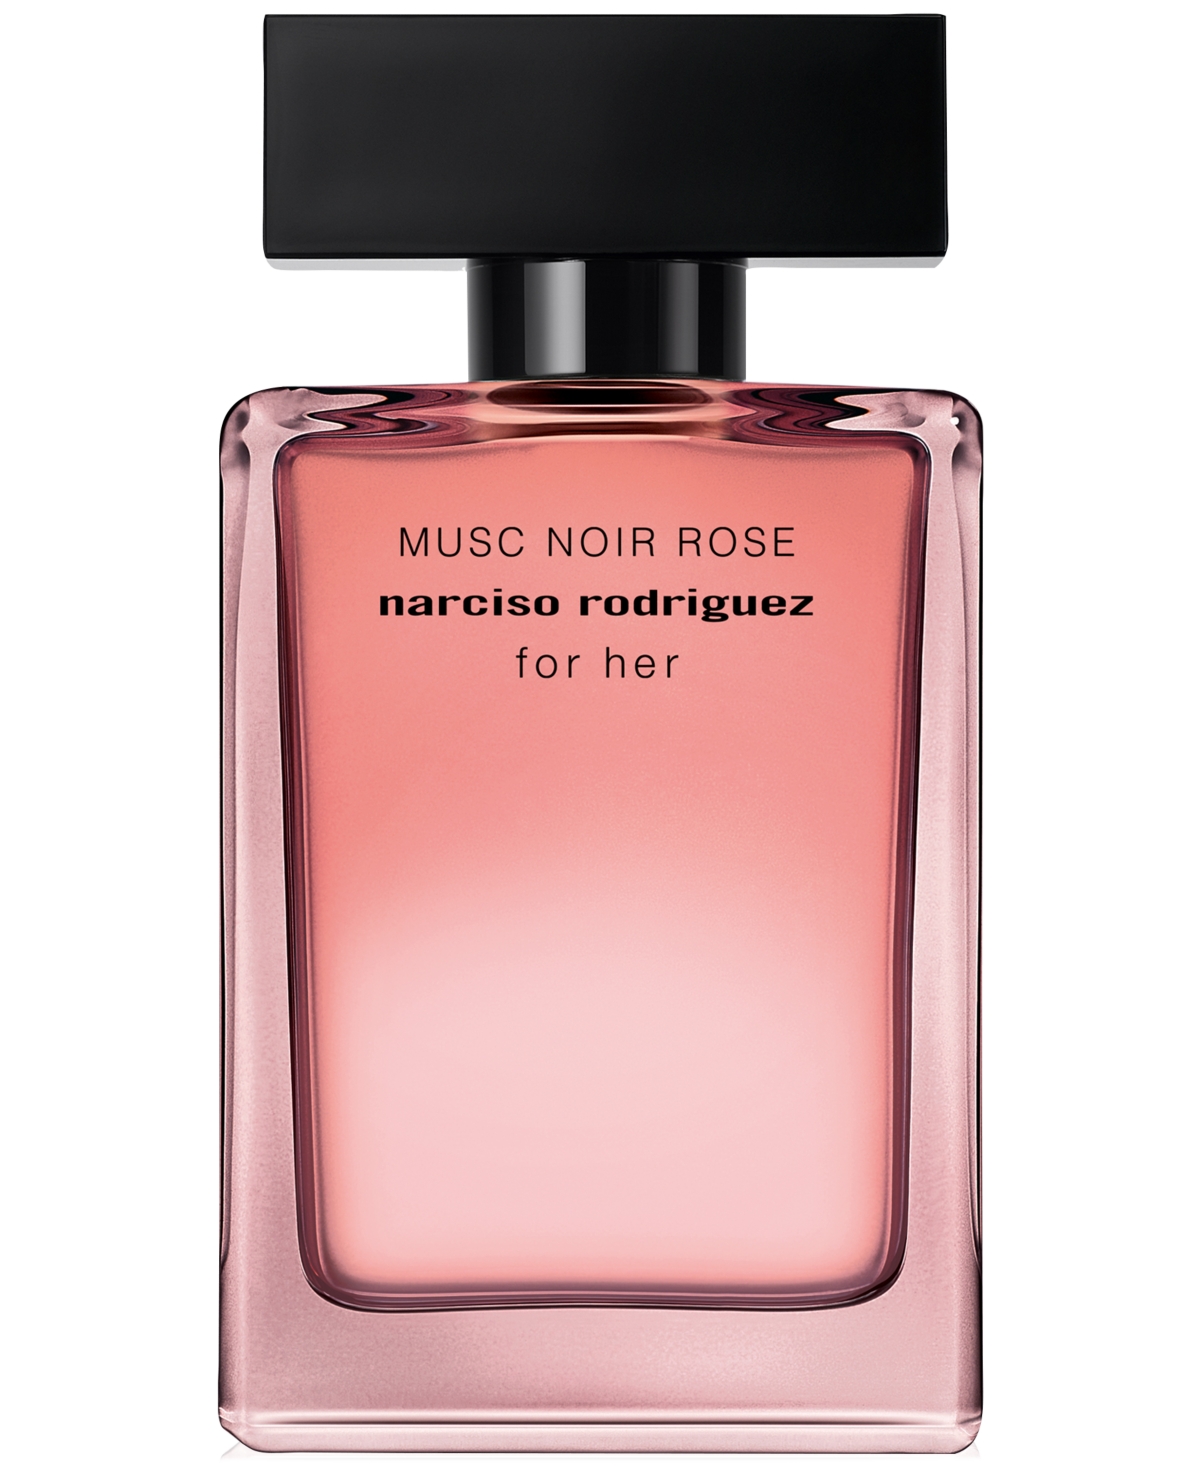 For Her Musc Noir Rose Eau de Parfum, 1.6 oz.